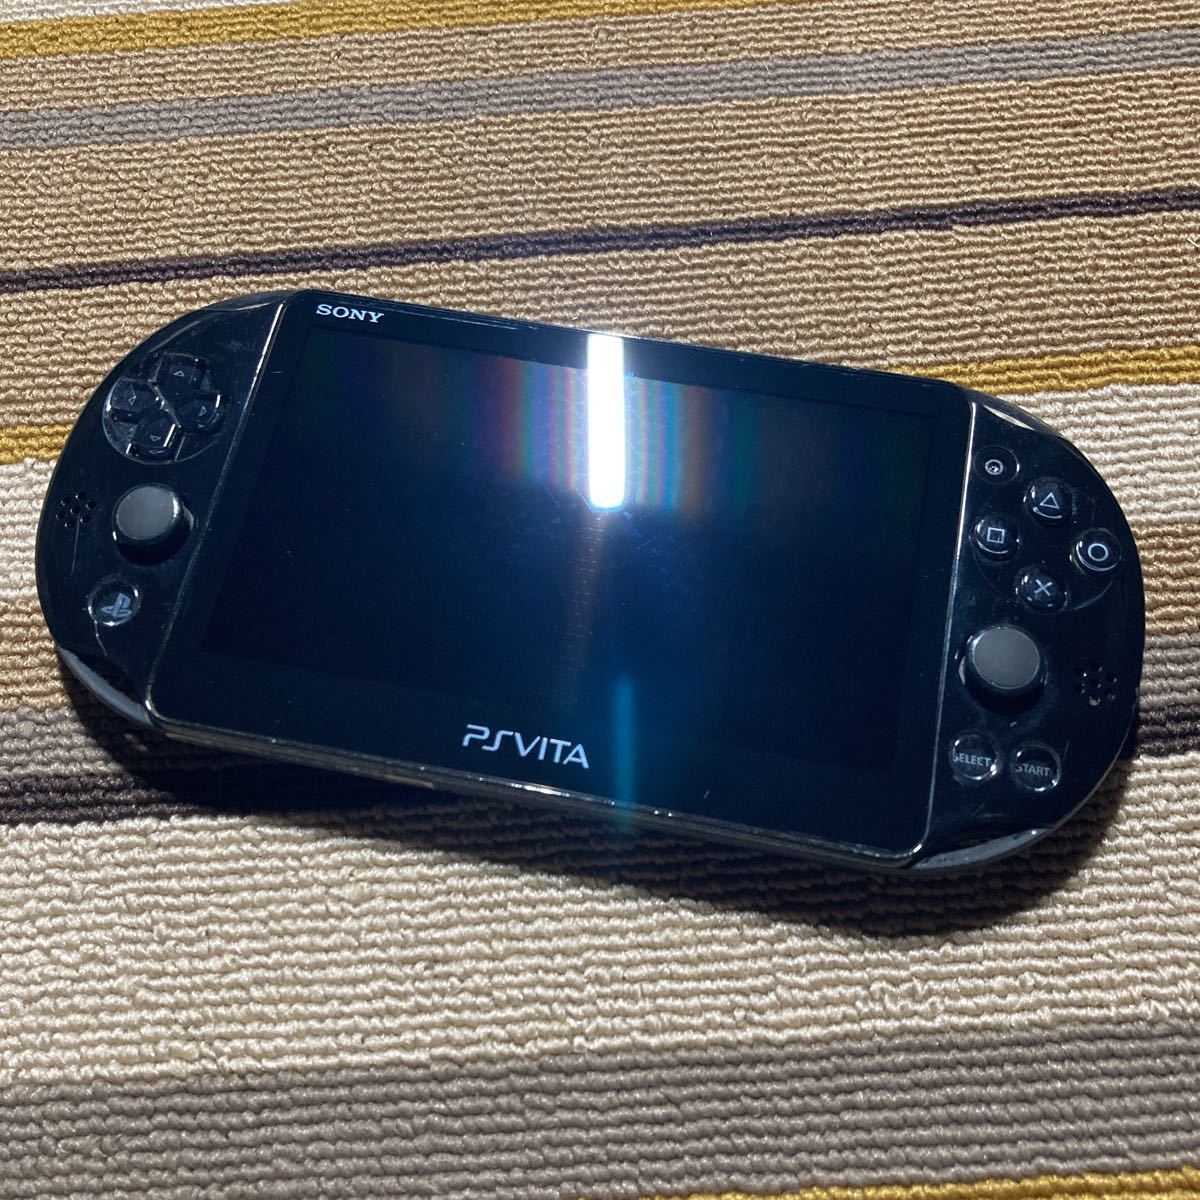 PS Vita PCH-2000 ブラック 本体のみ - www.enfieldsecurity.com